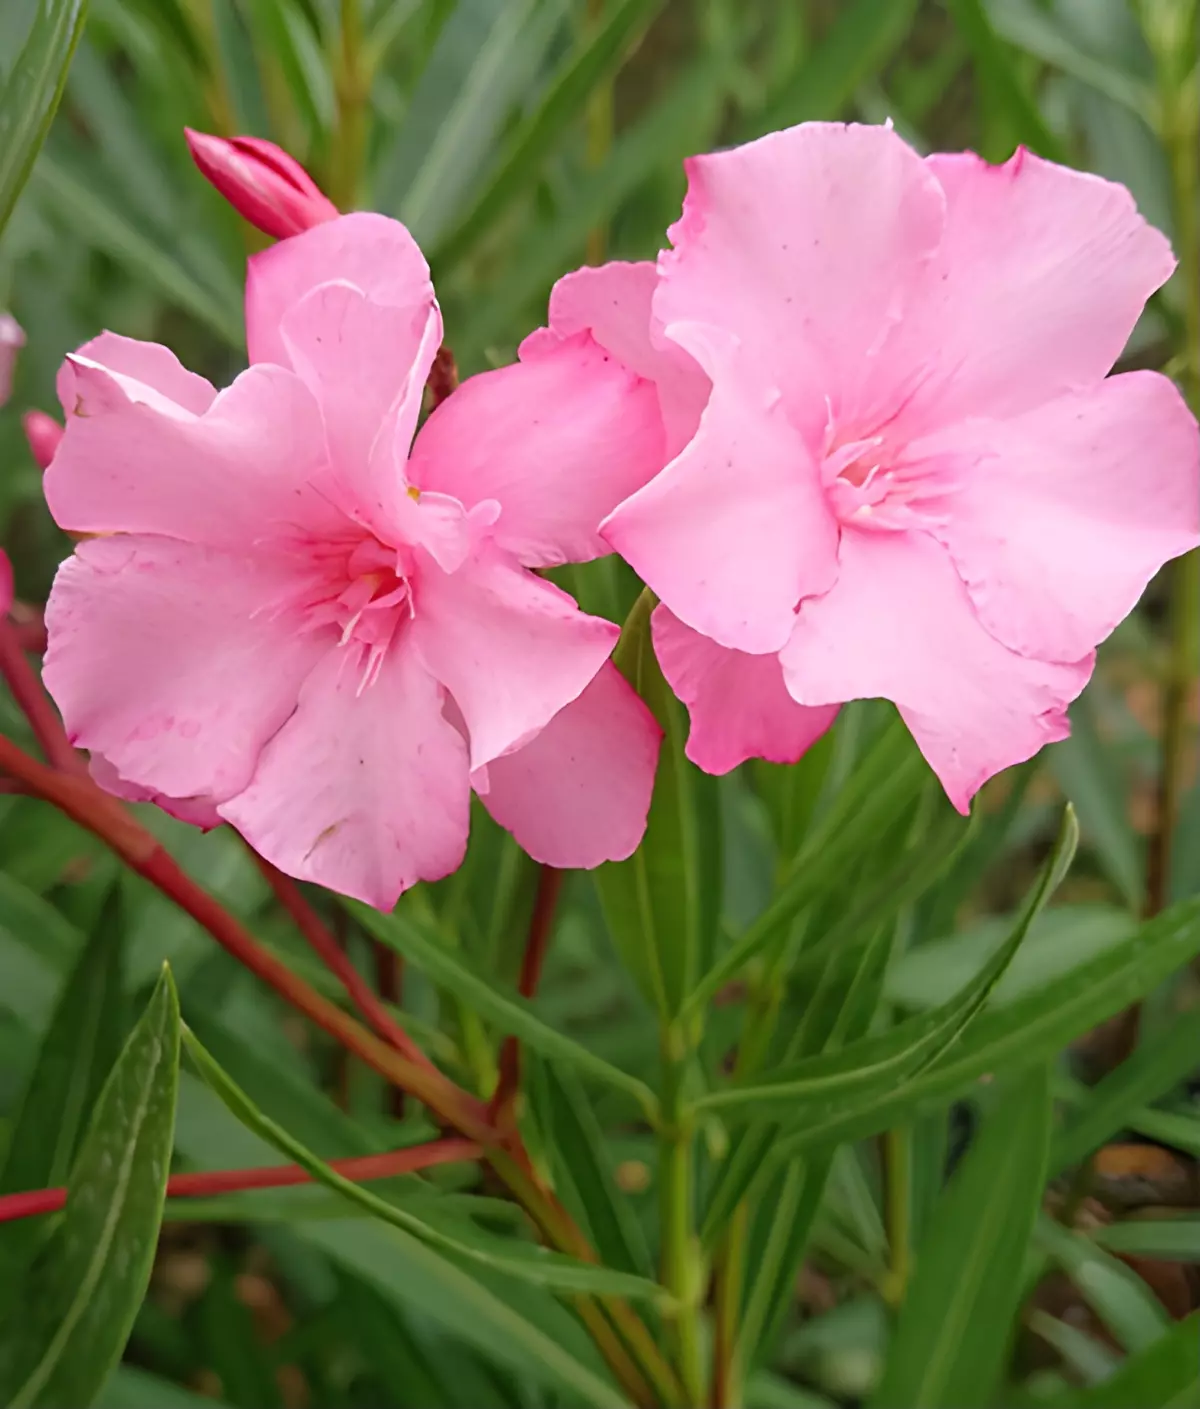 vue centree sur deux fleurs roses doibles du laurier rose cavalaire